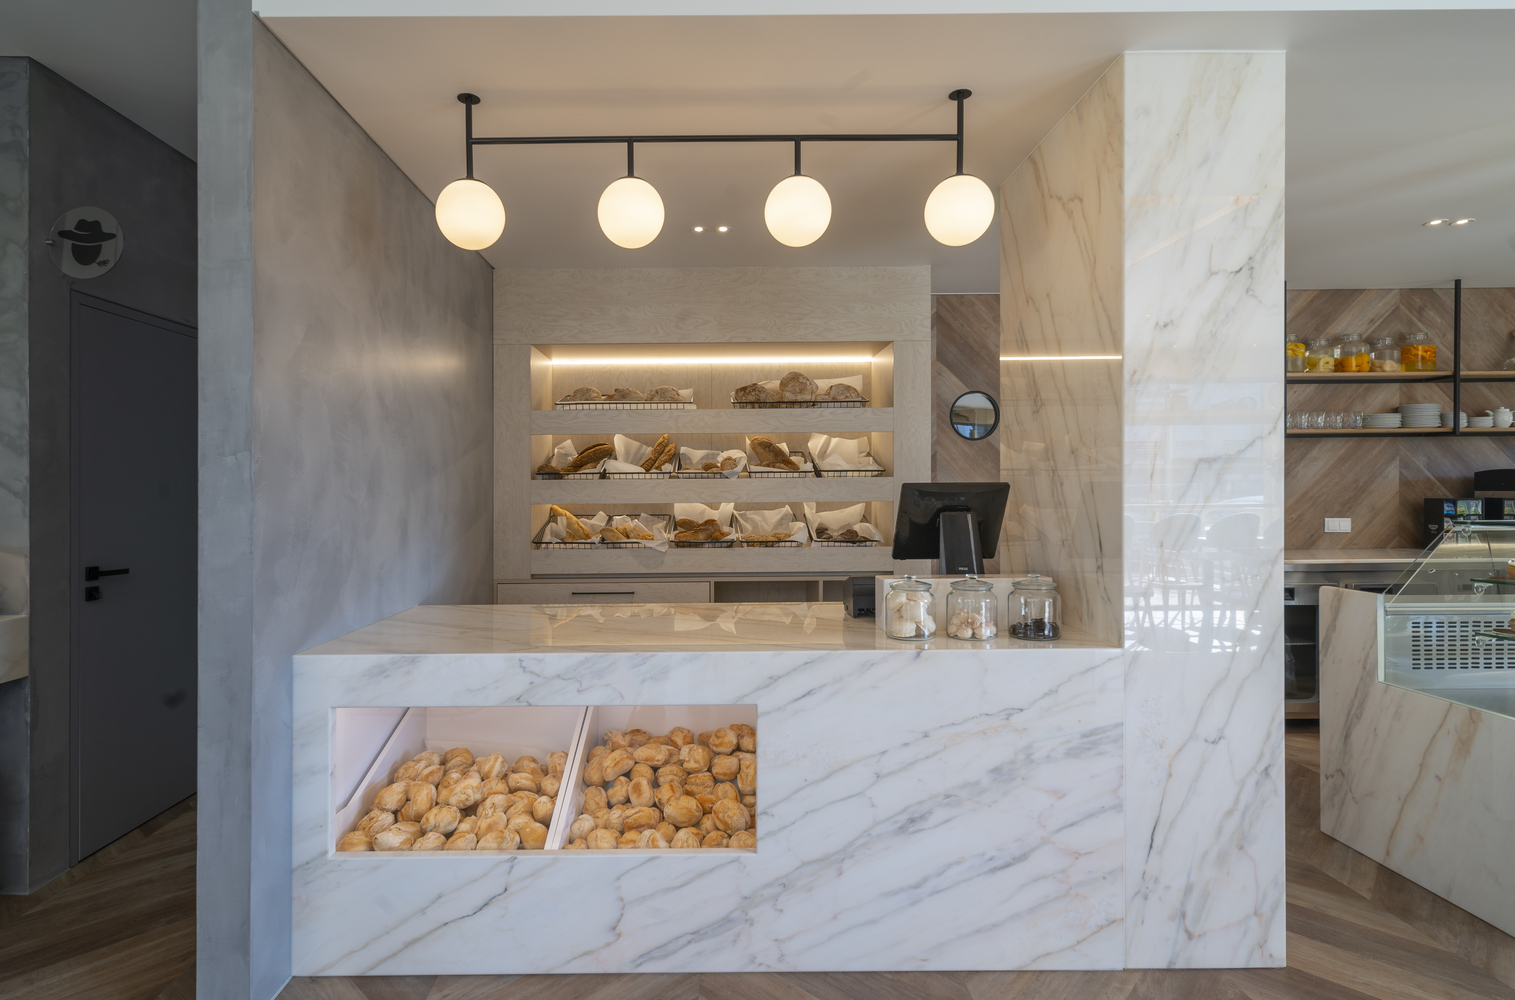 بازسازی و طراحی داخلی منحصر به فرد نانوایی و کافه قنادی